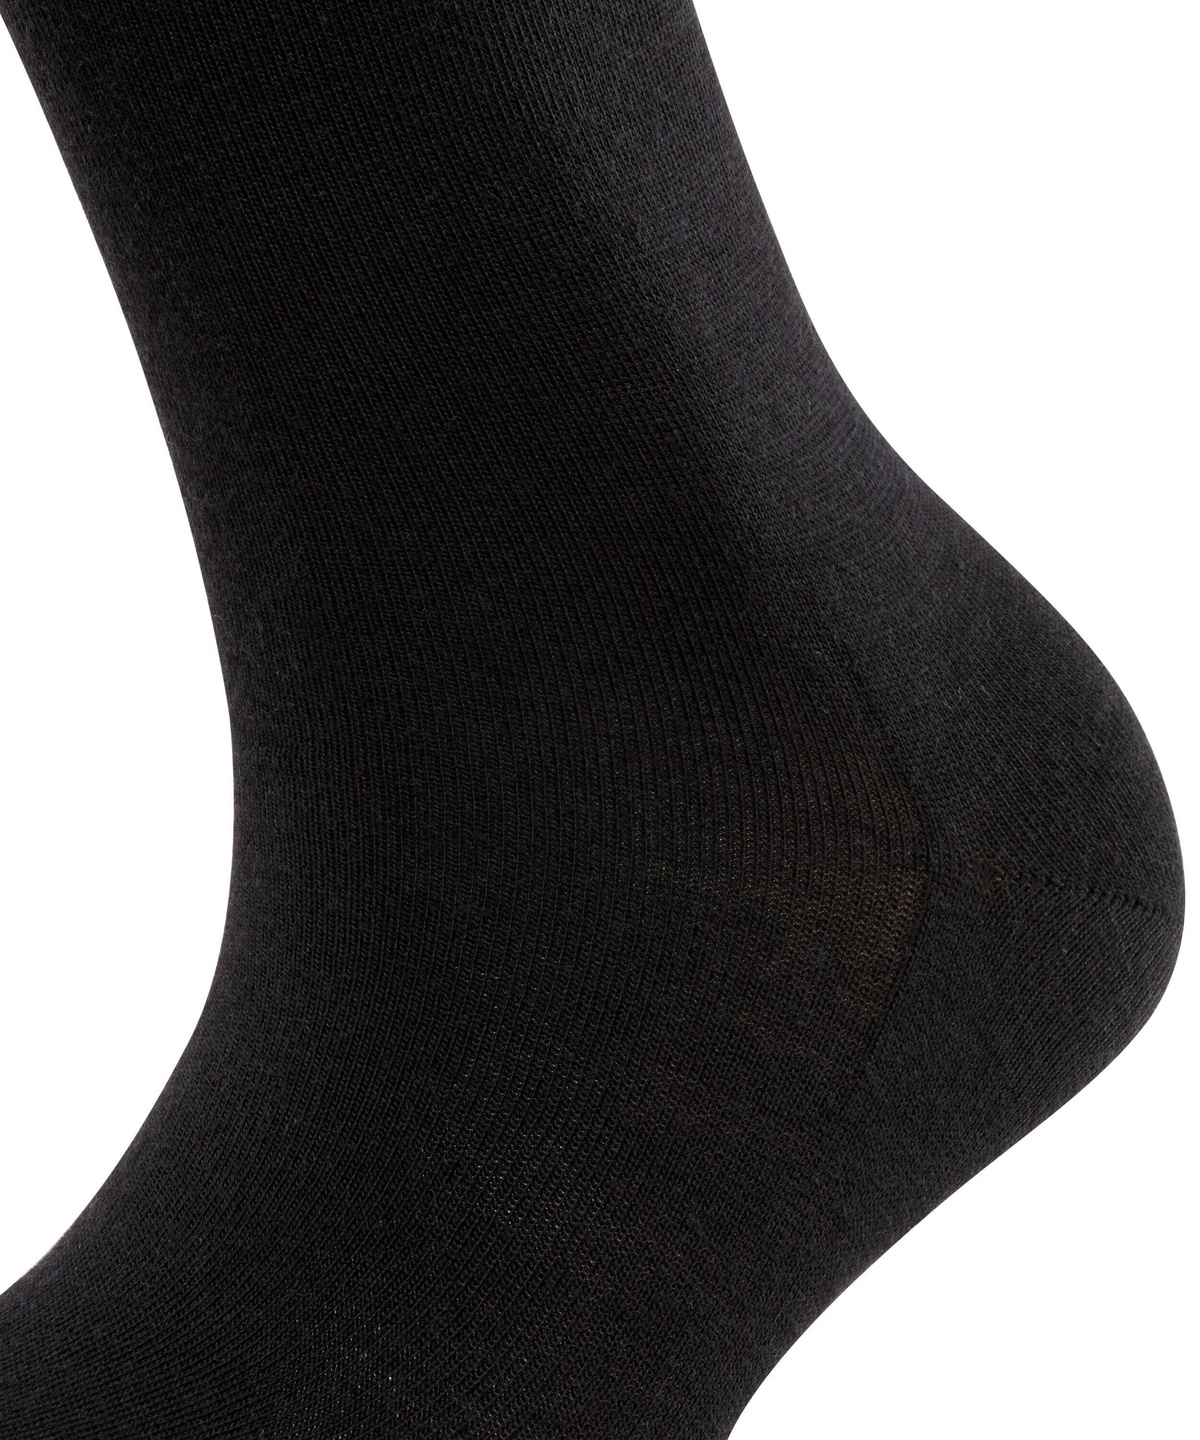 Falke Womens Soft Merino Socks — socksforliving.com